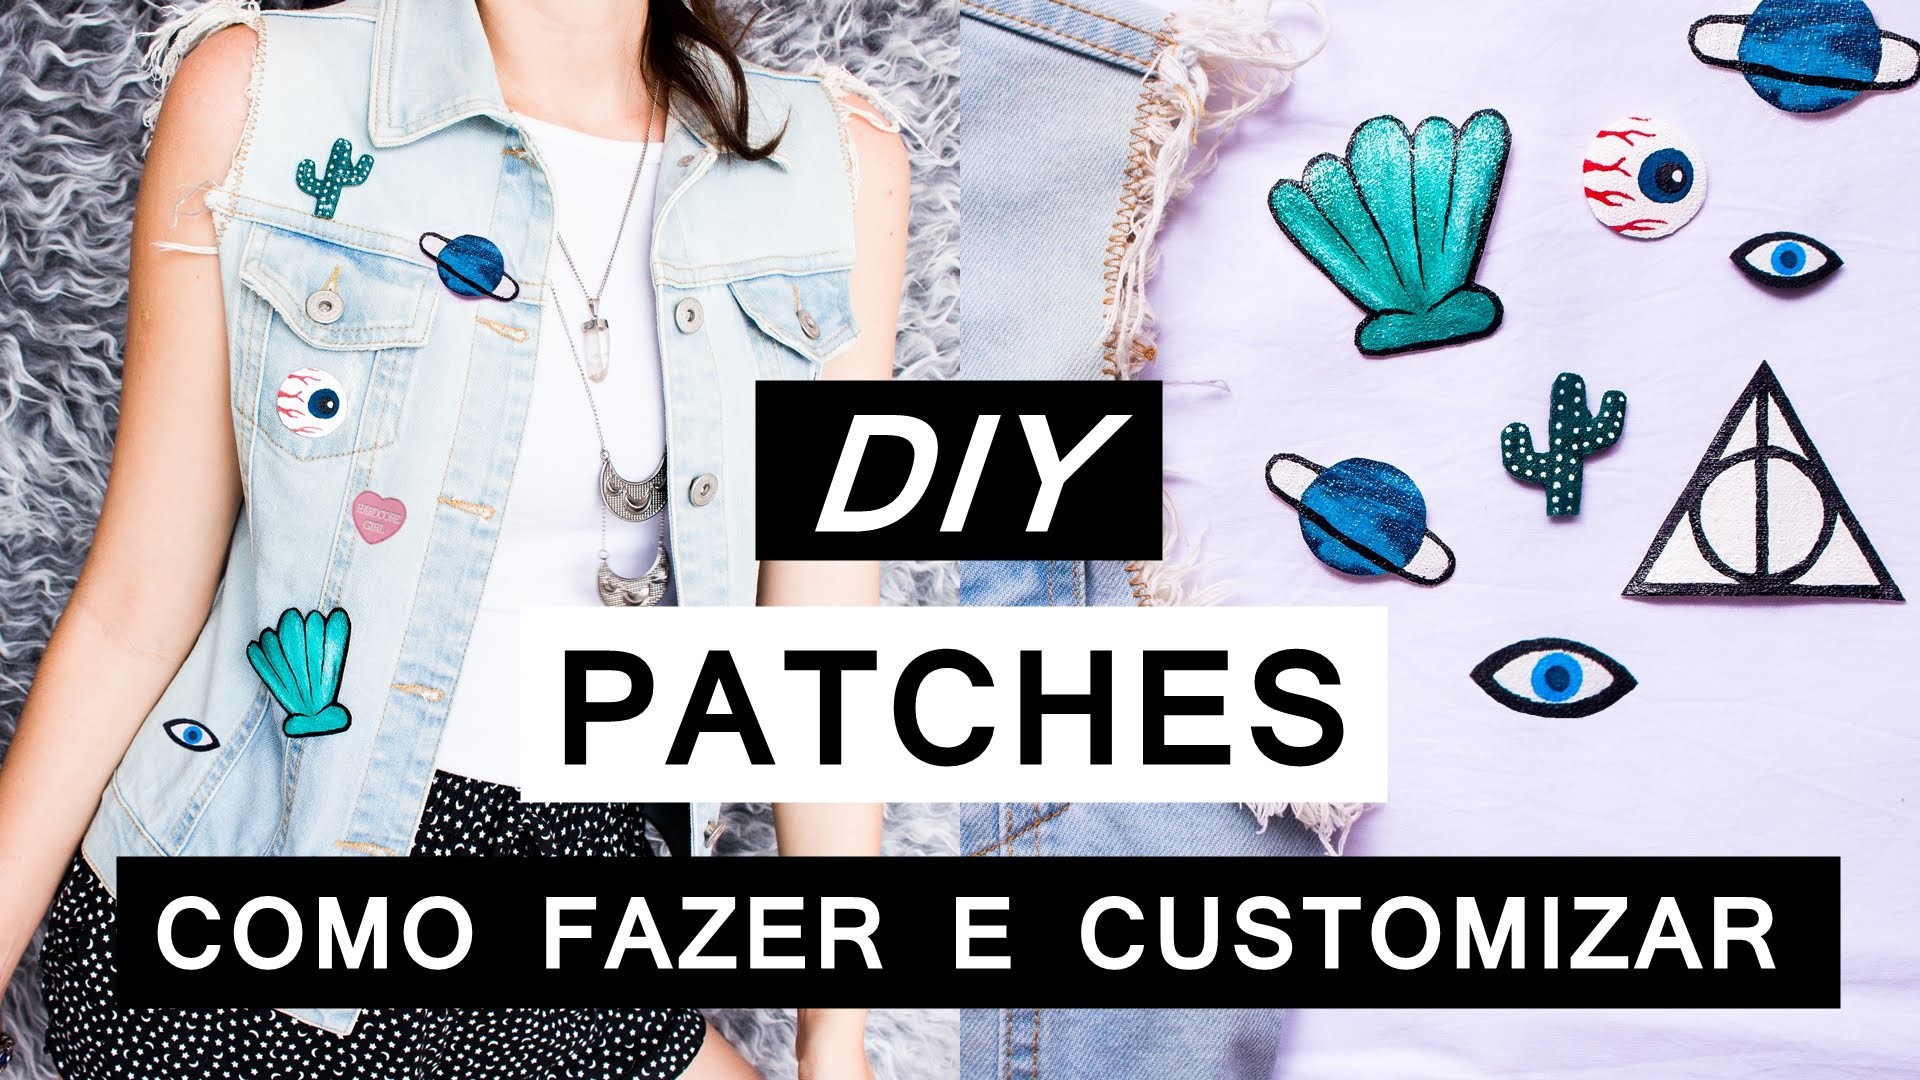 DIY PATCHES Como Fazer  e customizar roupas - Fácil e barato - Roupa estilo Tumblr